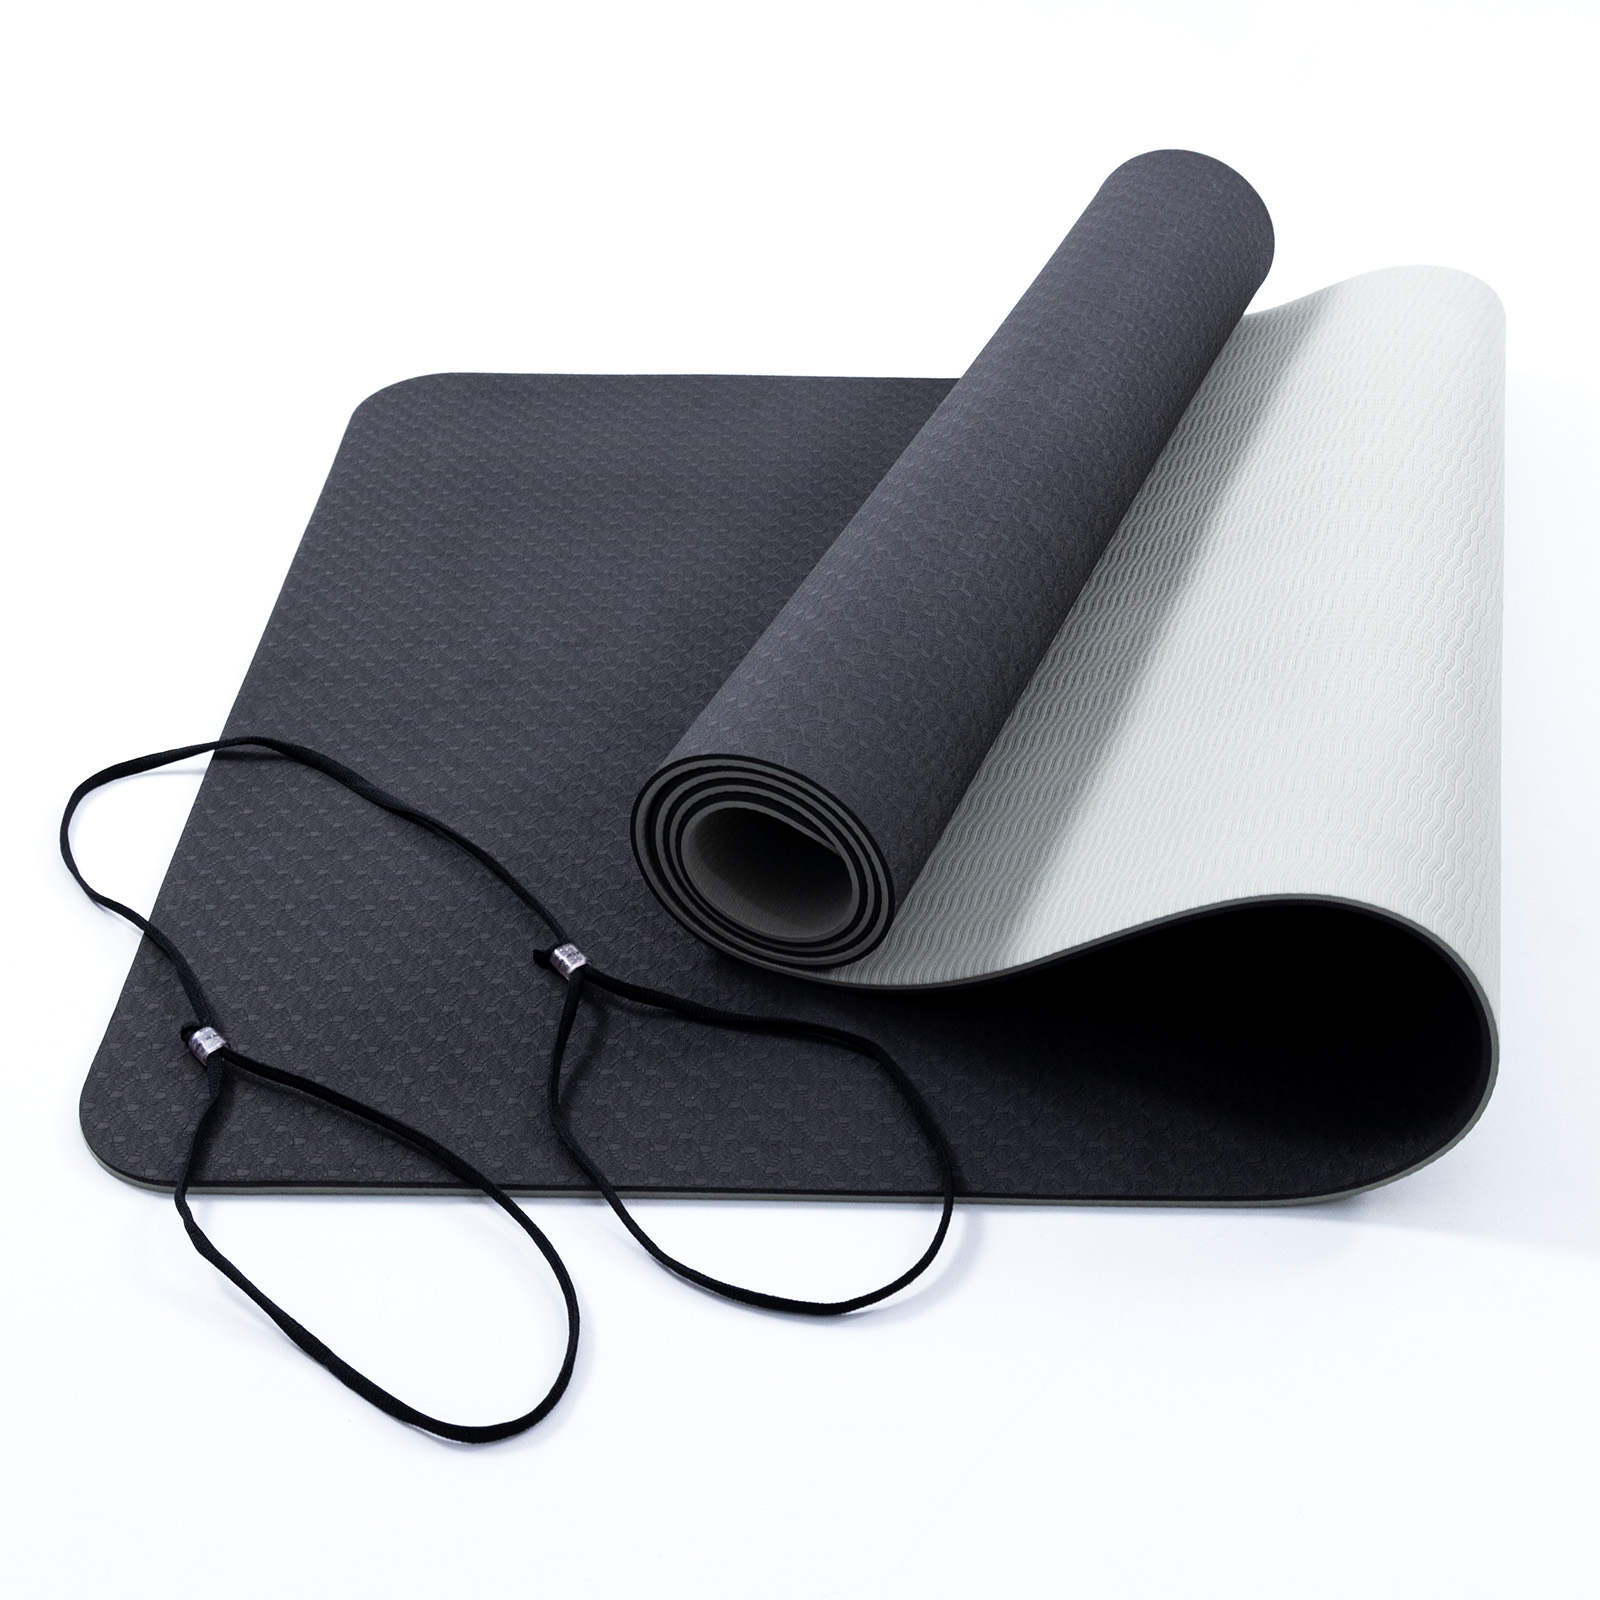 Купить Коврик для йоги PRANA Henna E.C.O. Yoga Mat, TPE (ТПЭ), 5мм в Киеве  и Украине, Yogamat